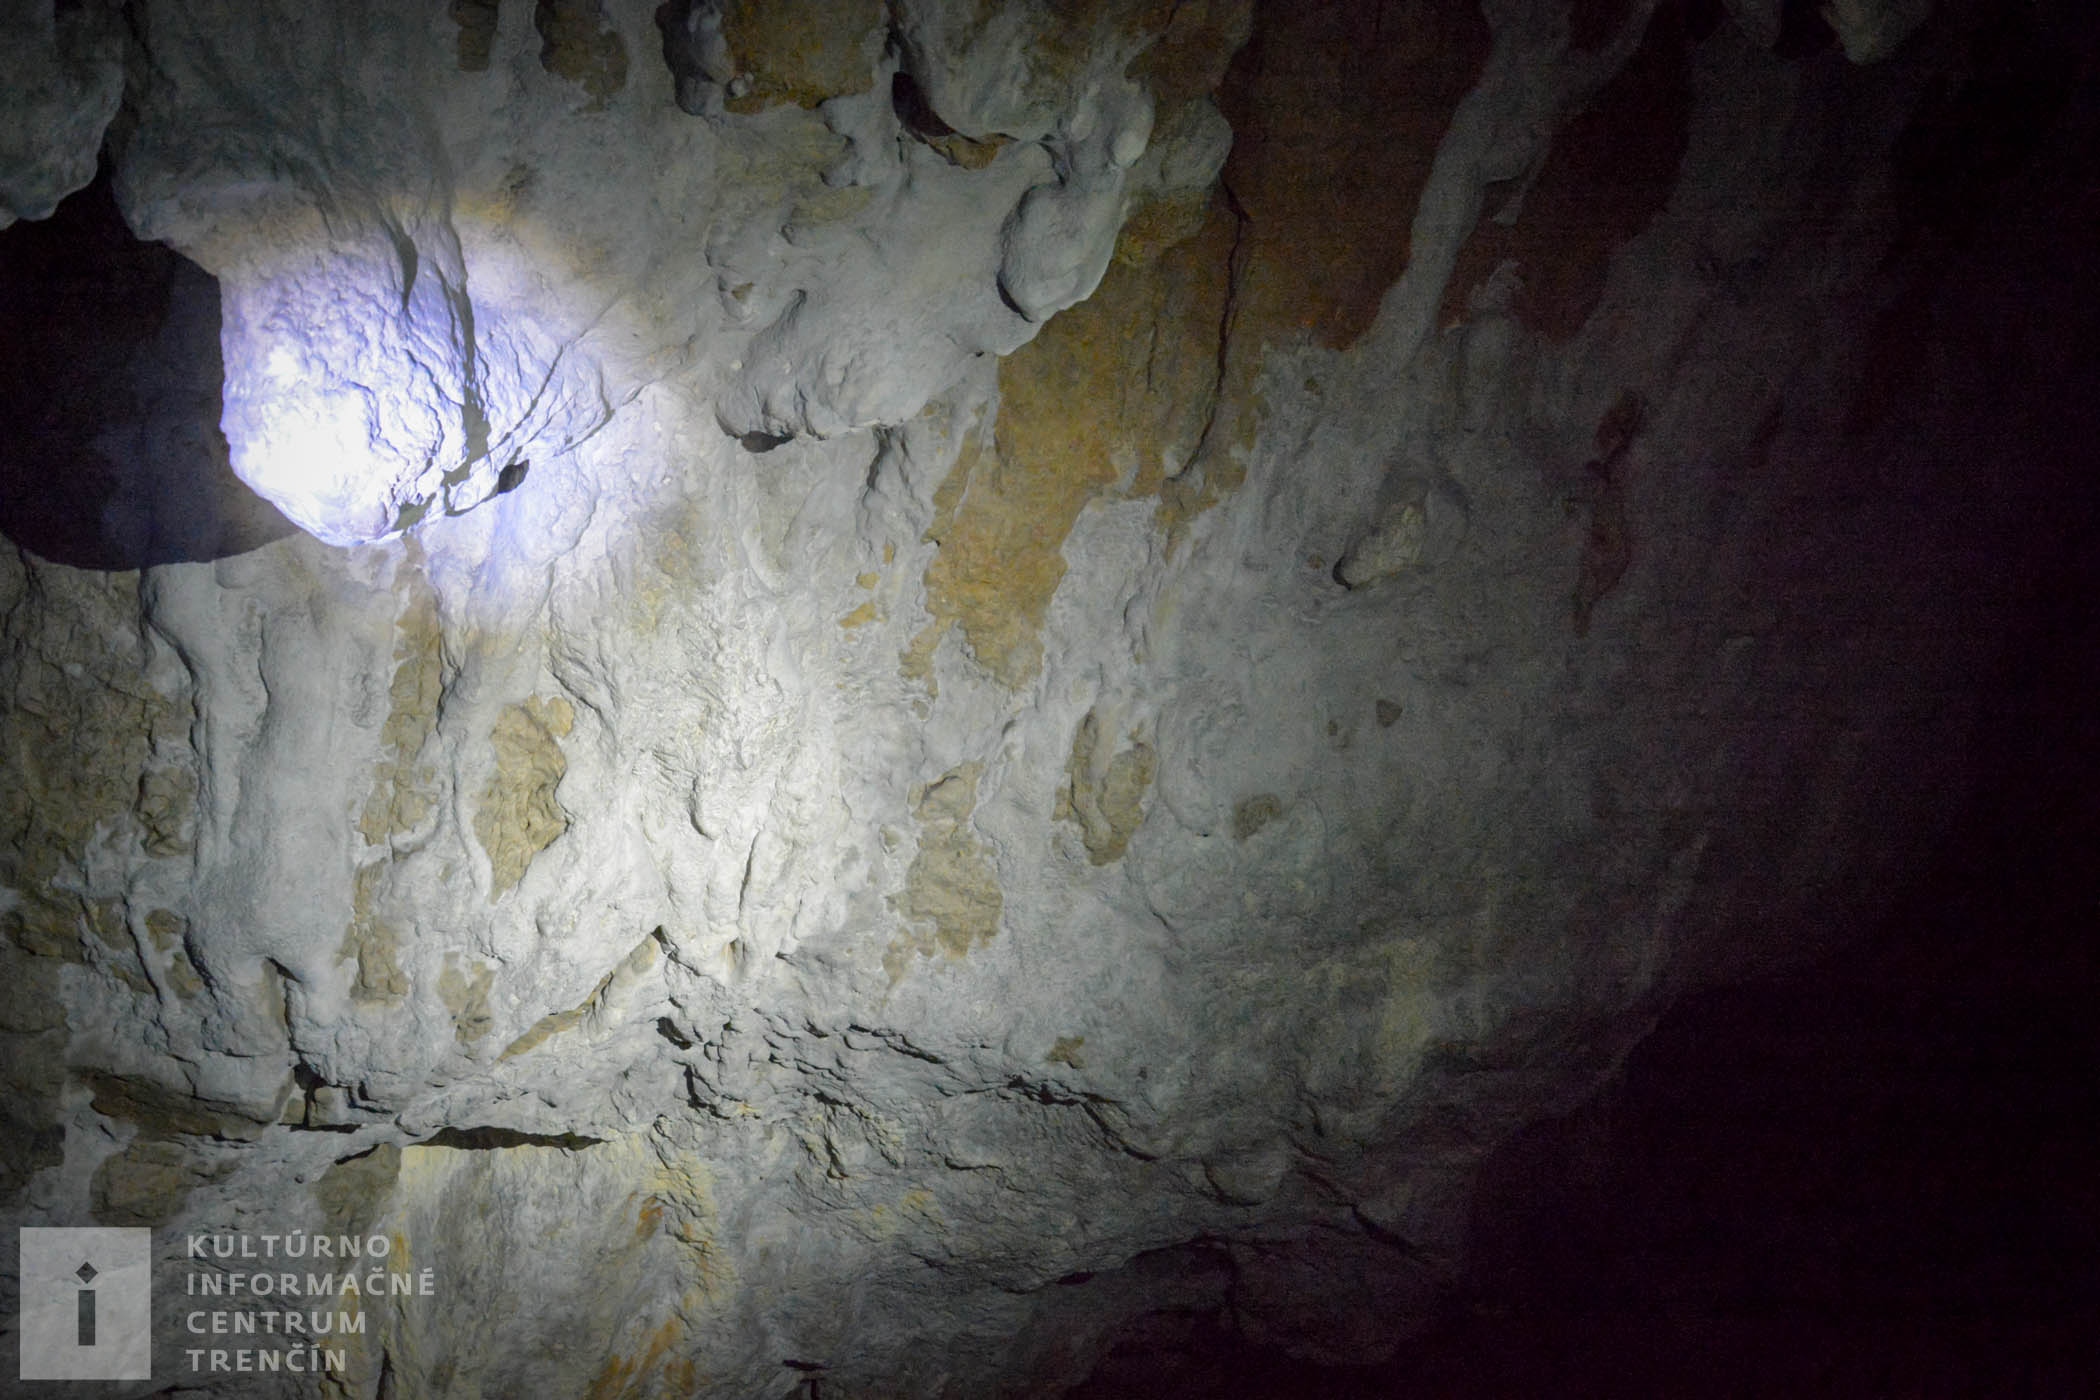 Jaskyňa sa nachádza vo svahu Čierneho vrchu pri obci Priedhorie.